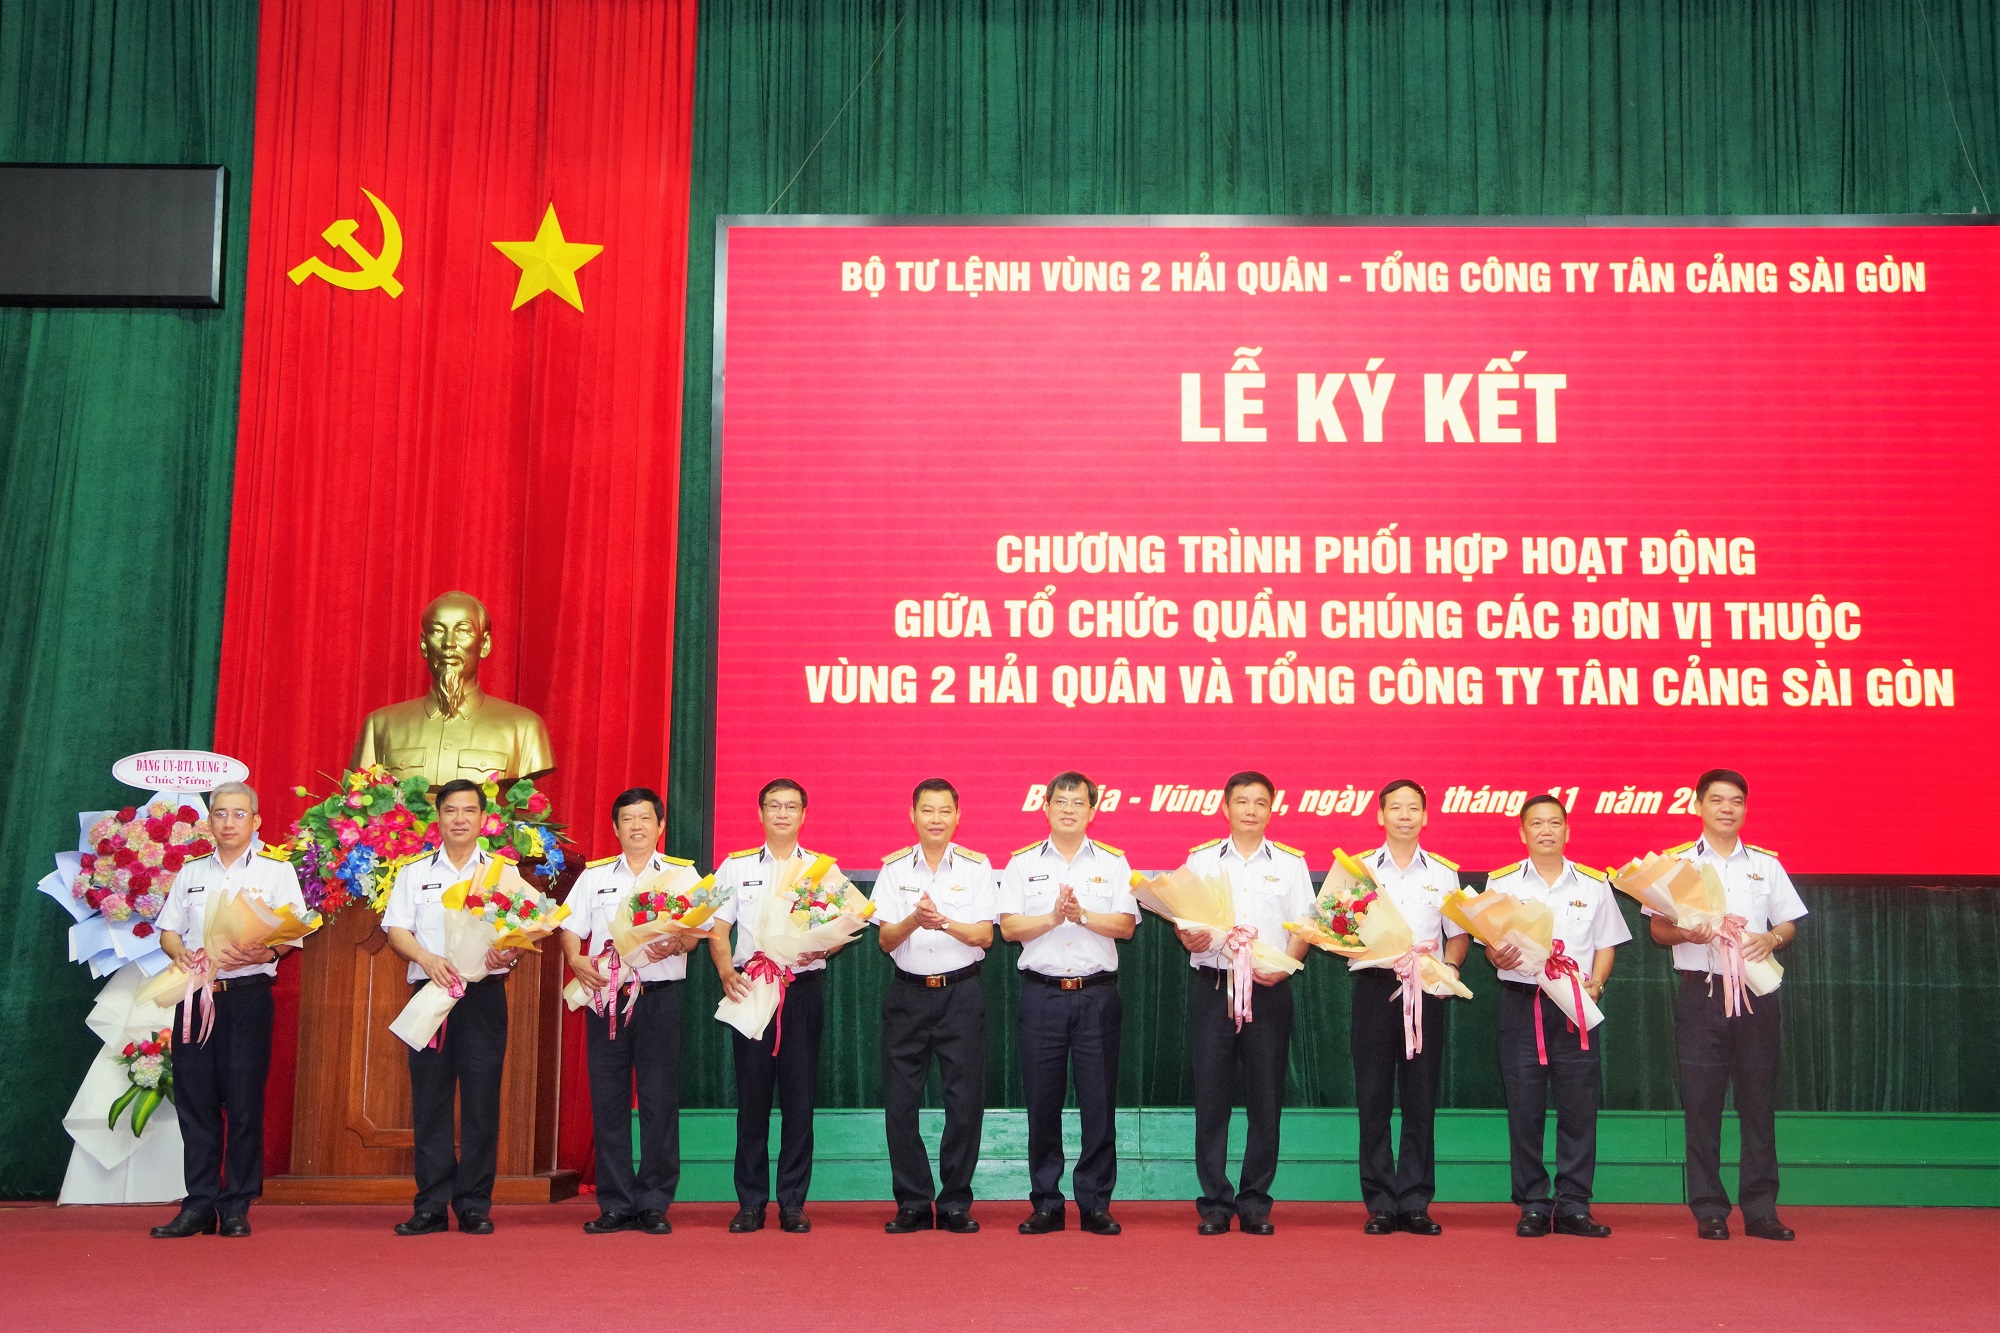 Ký kết chương trình phối hợp hoạt động giữa tổ chức quần chúng các đơn vị thuộc Tổng Công ty Tân Cảng Sài Gòn và Vùng 2 Hải quân